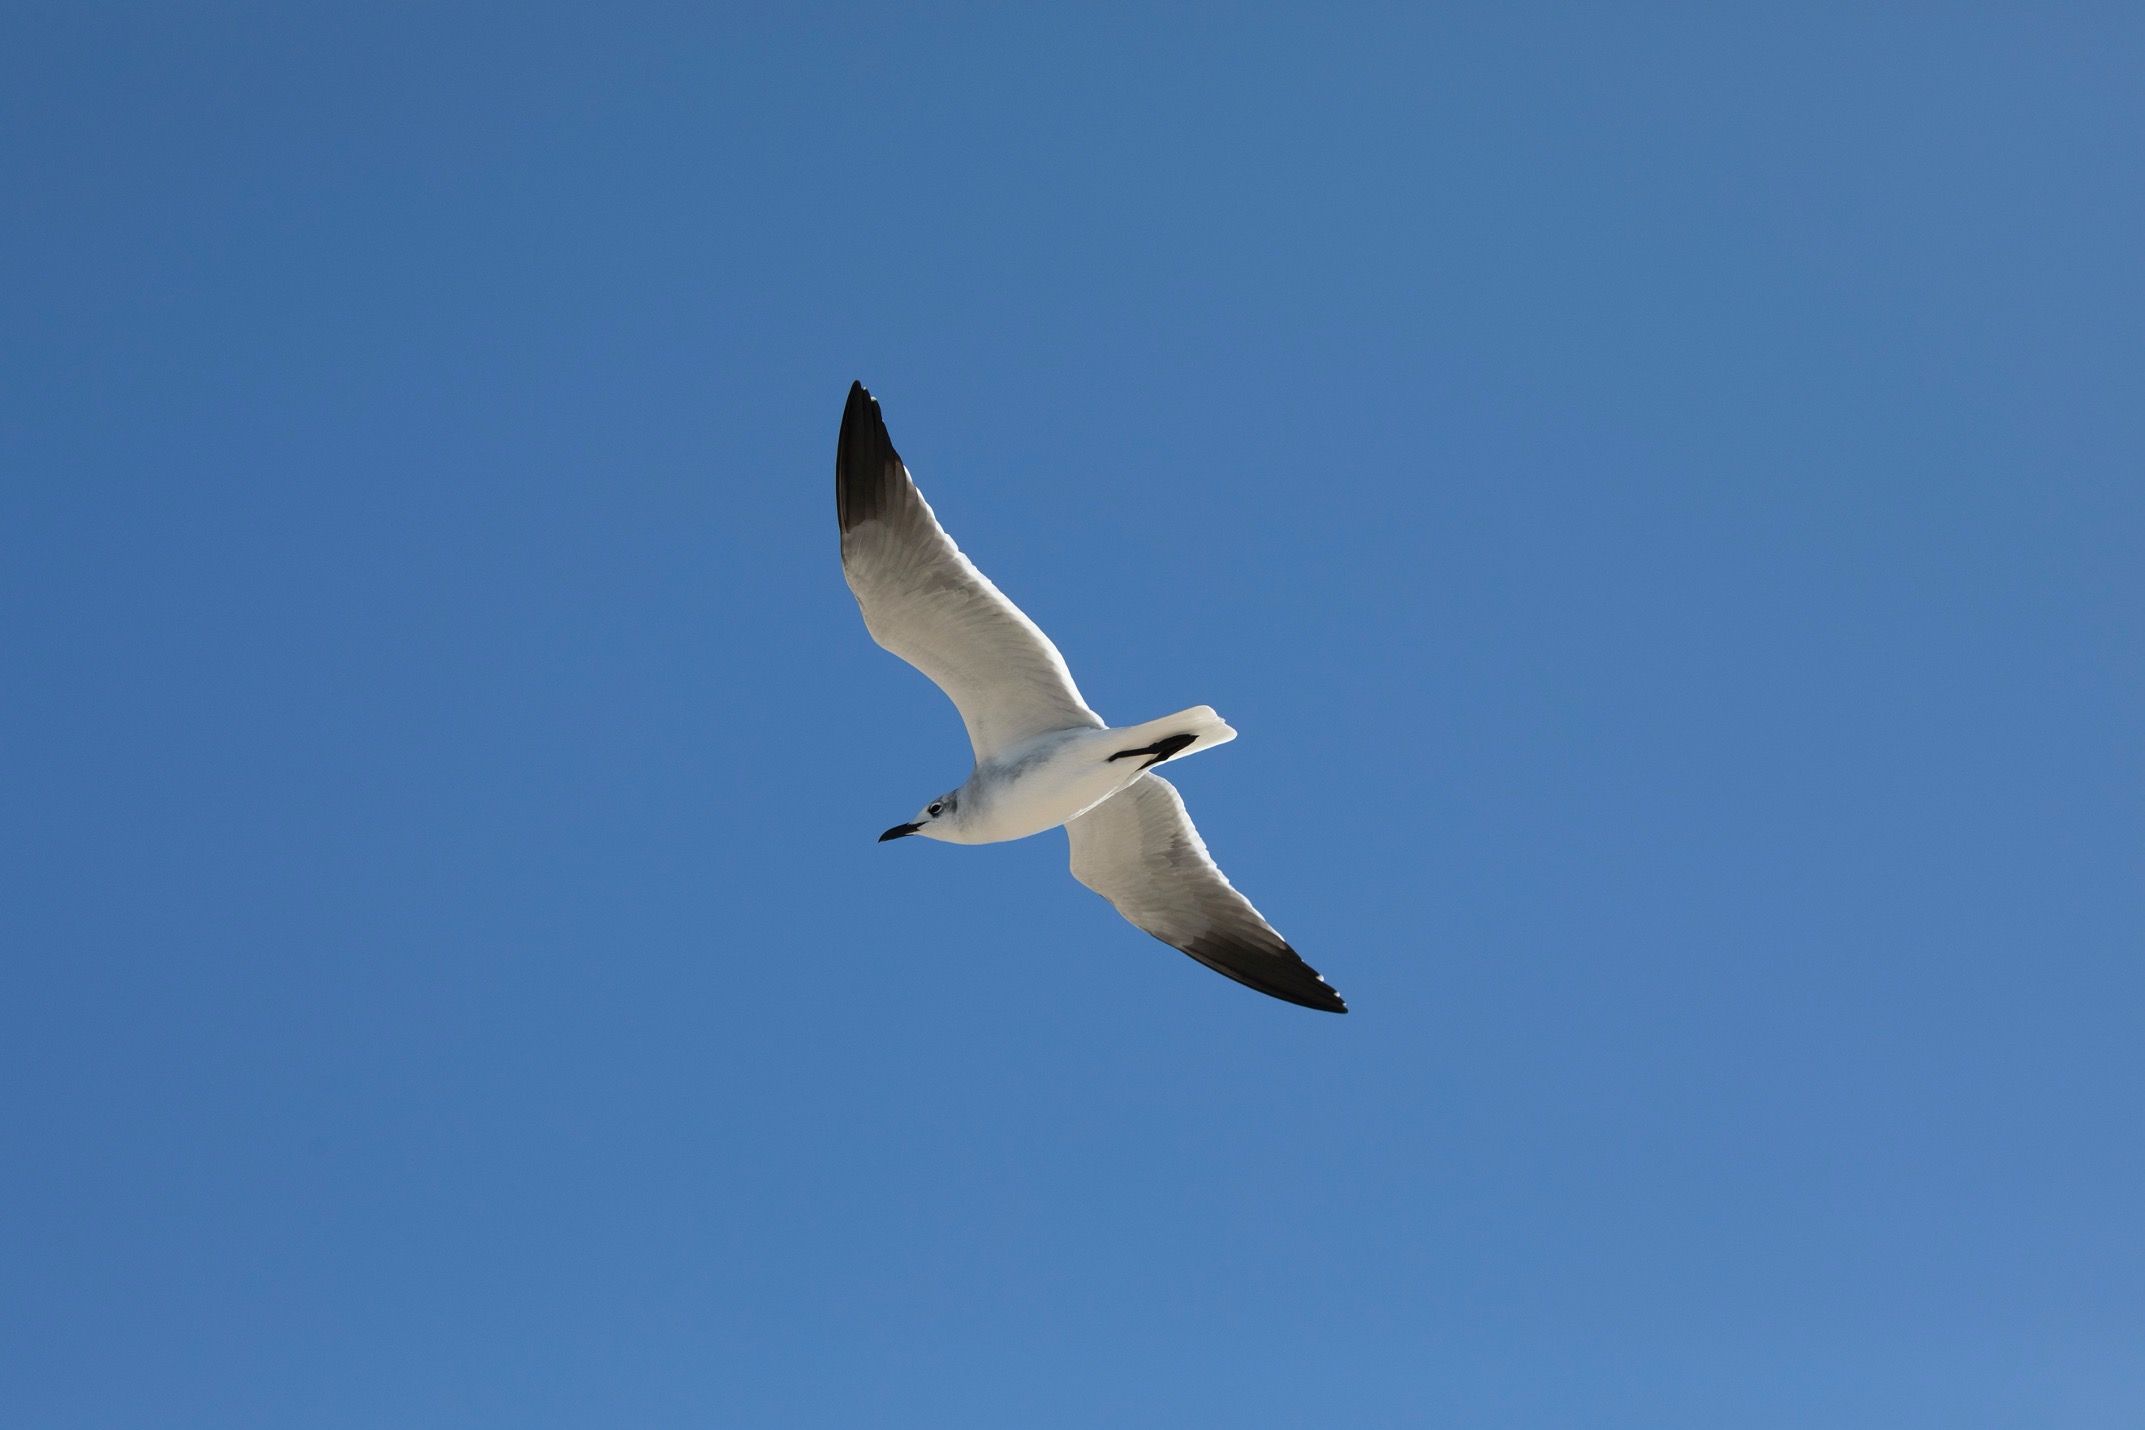 a seagull soars overhead